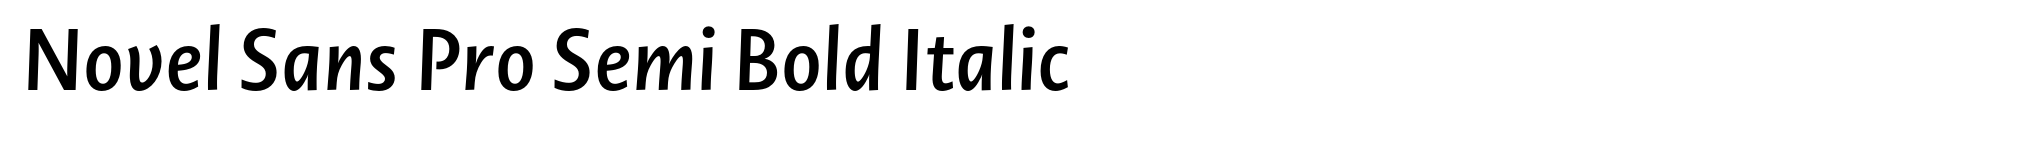 Novel Sans Pro Semi Bold Italic image